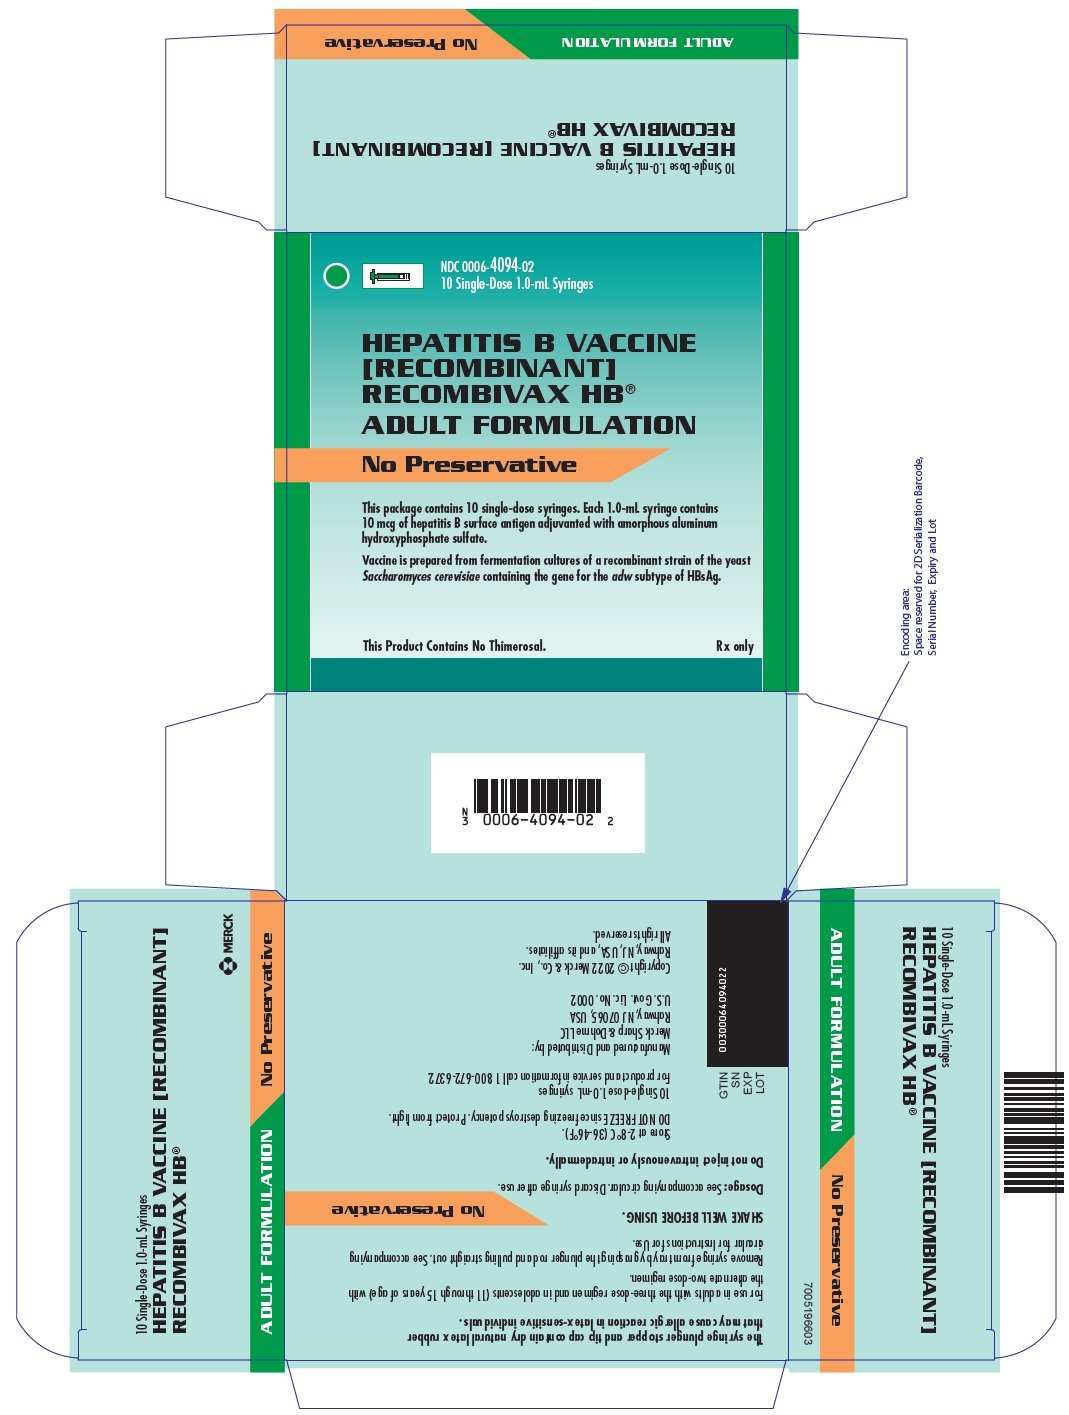 PRINCIPAL DISPLAY PANEL - 1.0 mL Syringe Carton